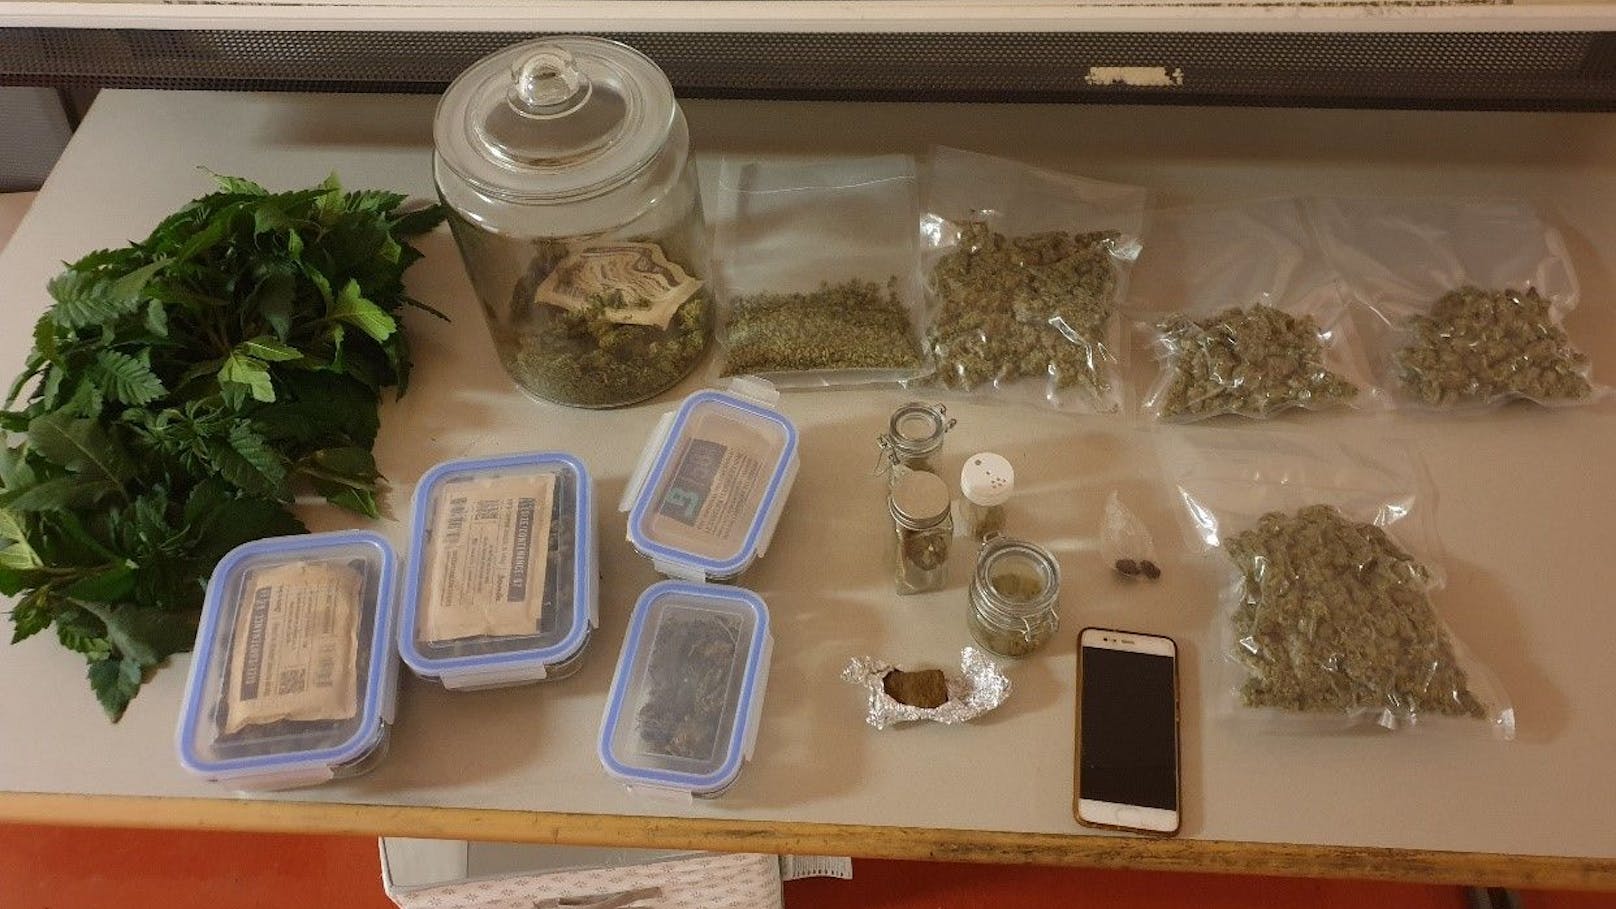 Die Polizei stellte eine größere Menge verpacktes Cannabis, Bargeld sowie eine Feinwaage und ein Mobiltelefon sichergestellt